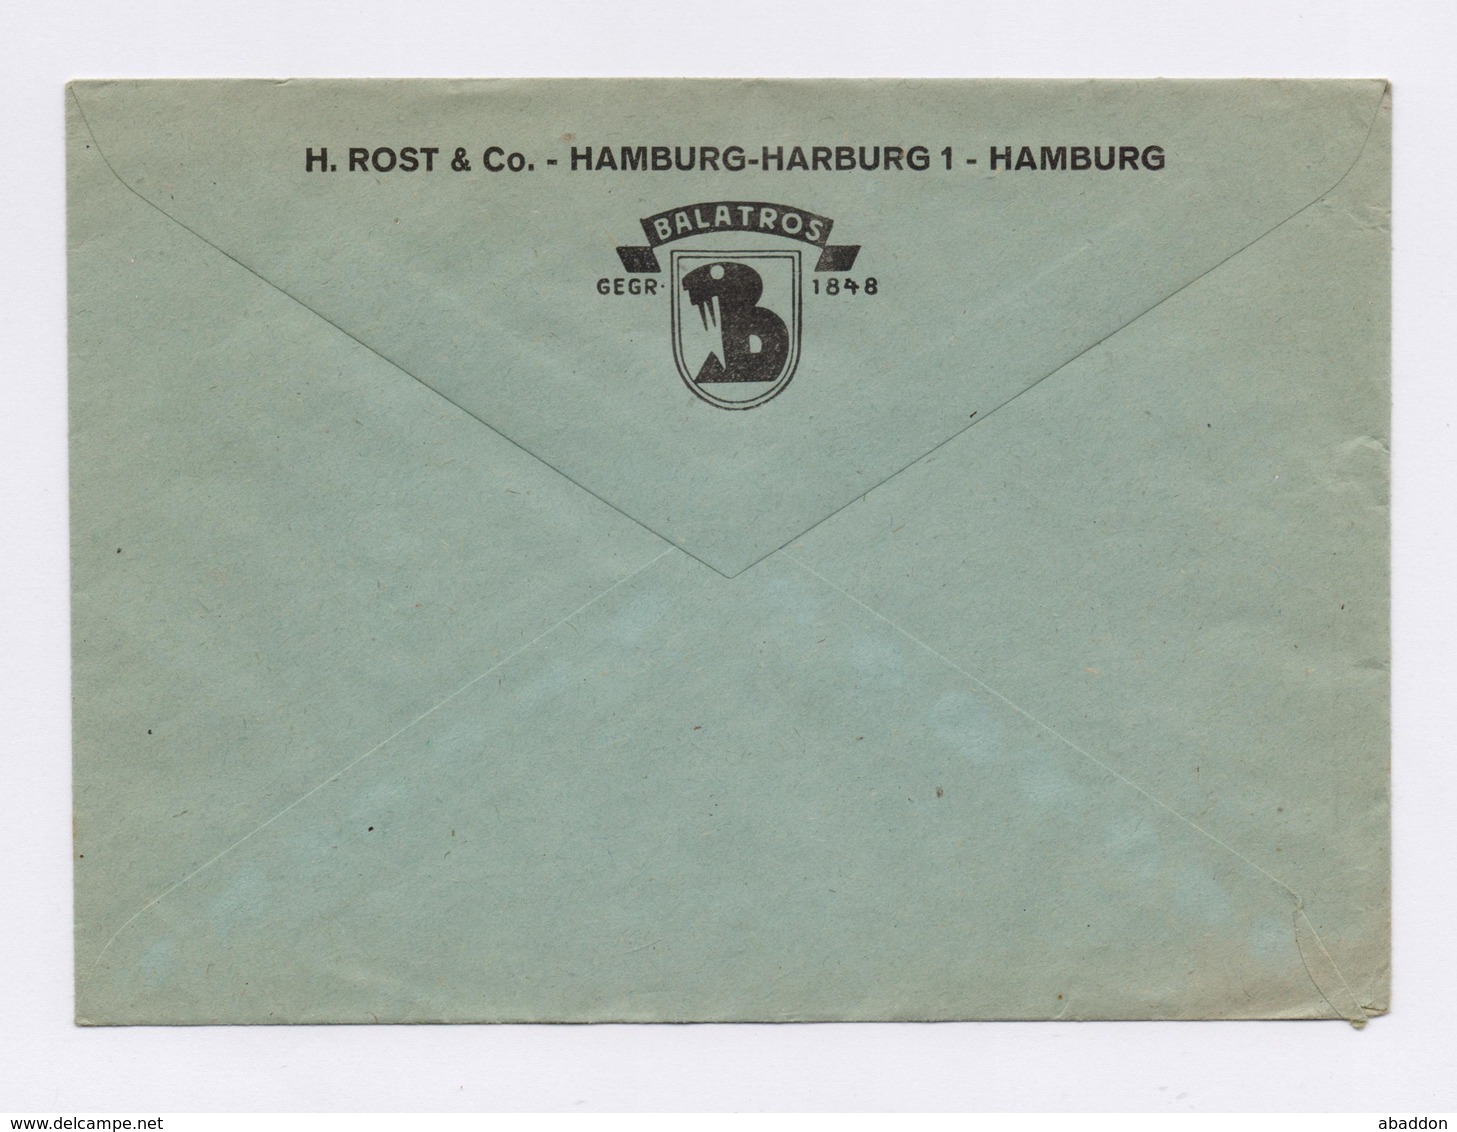 Firmen Umschlag AFS - HAMBURG HARBURG, H. Rost & Co. BALATROS 1943 - Maschinenstempel (EMA)